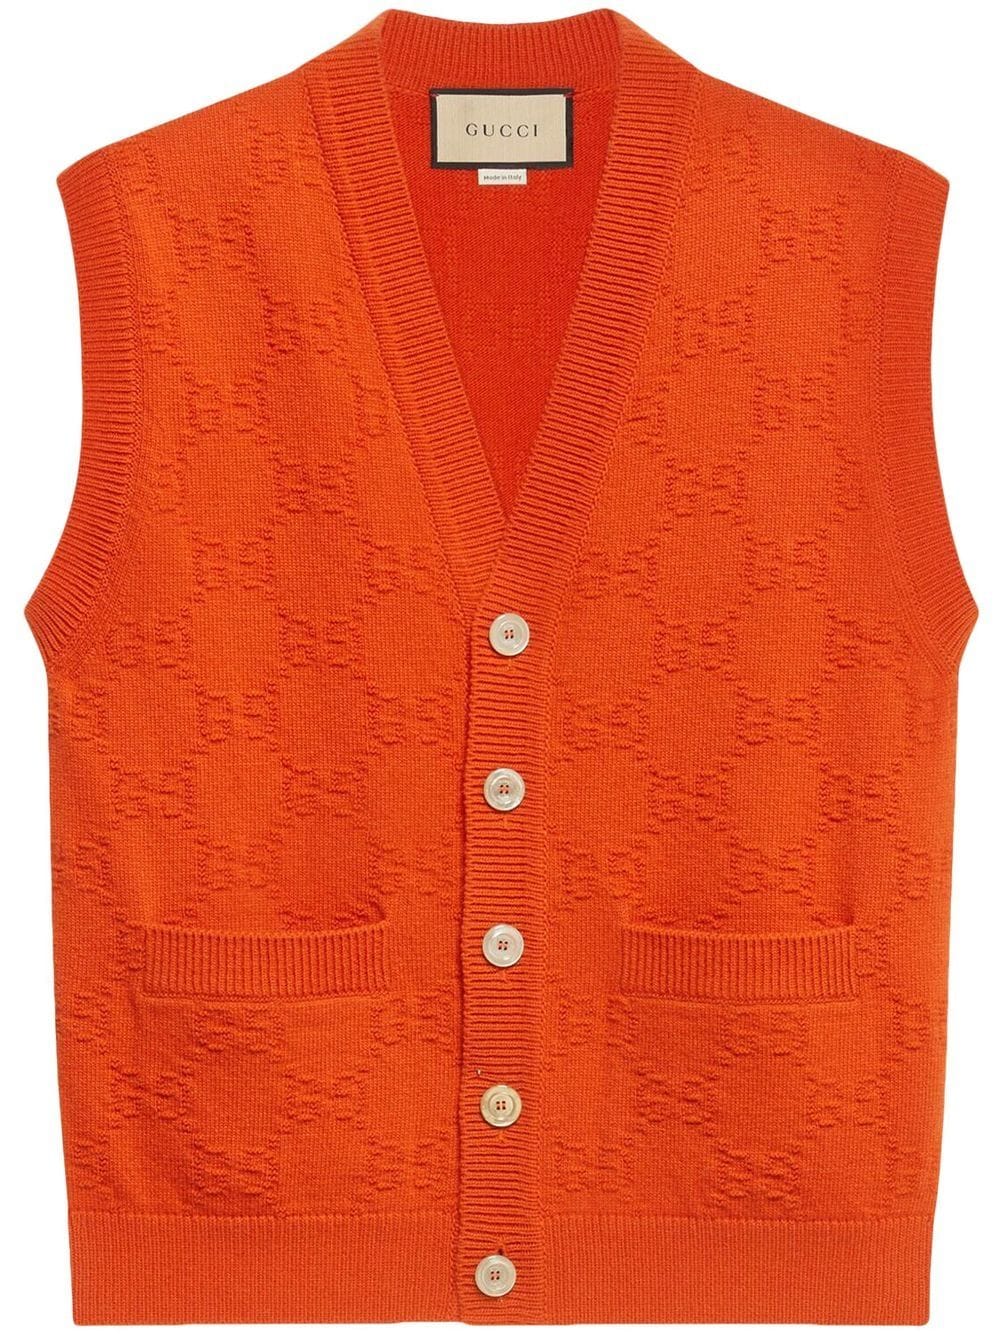 Gucci GG-motif knit vest